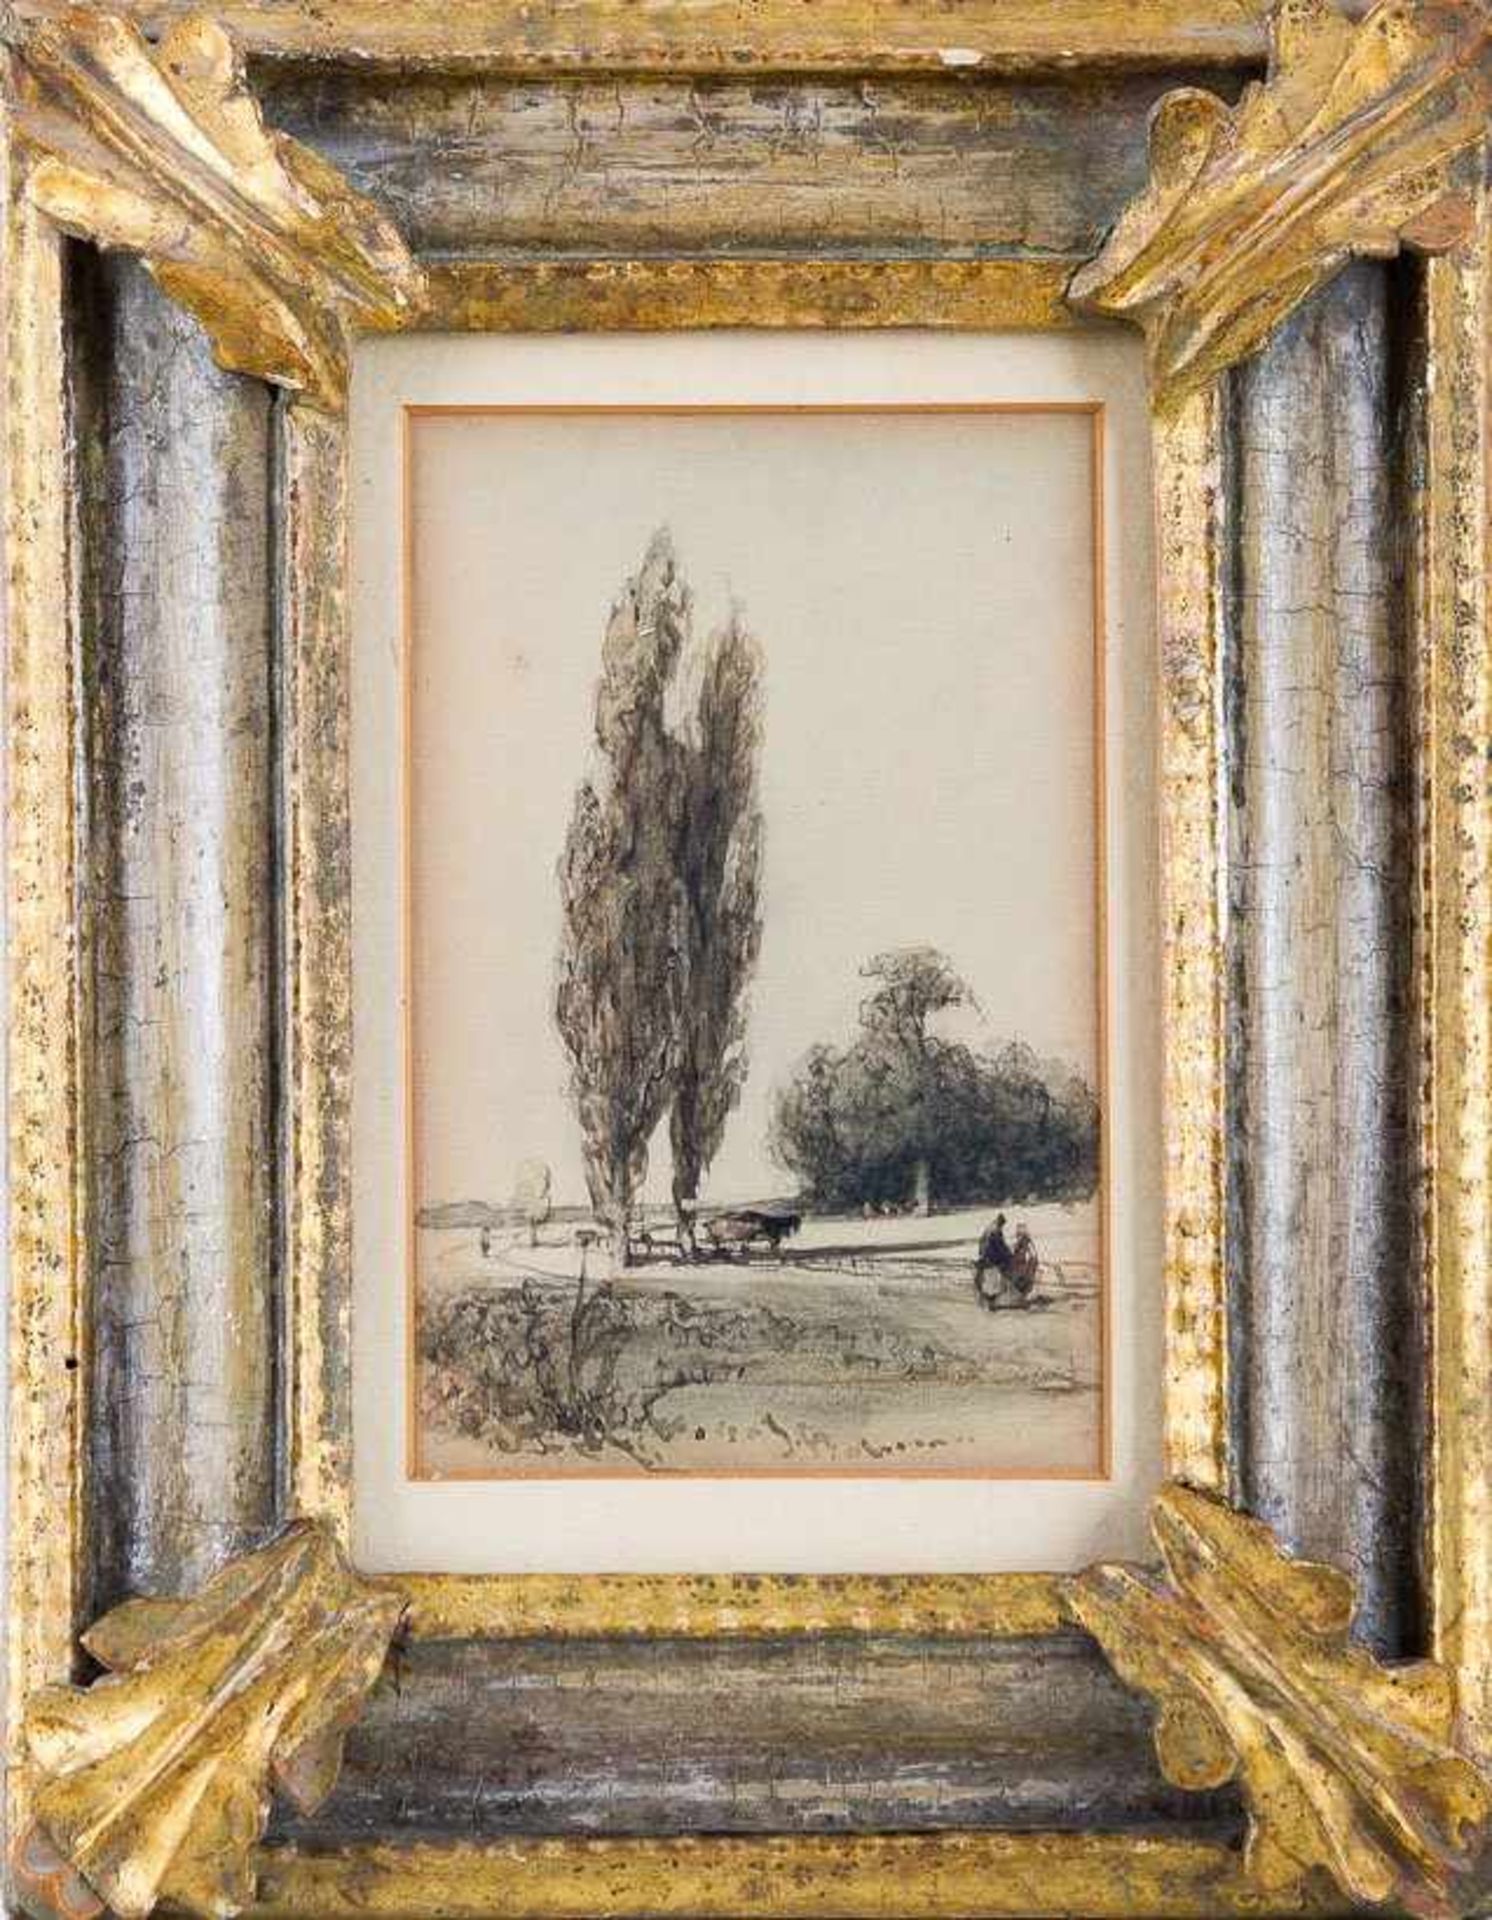 Bosboom, Johannes (Den Haag 1817-1891) Landschaft mit zwei Pappeln und Figurenstaffage. Aquarell